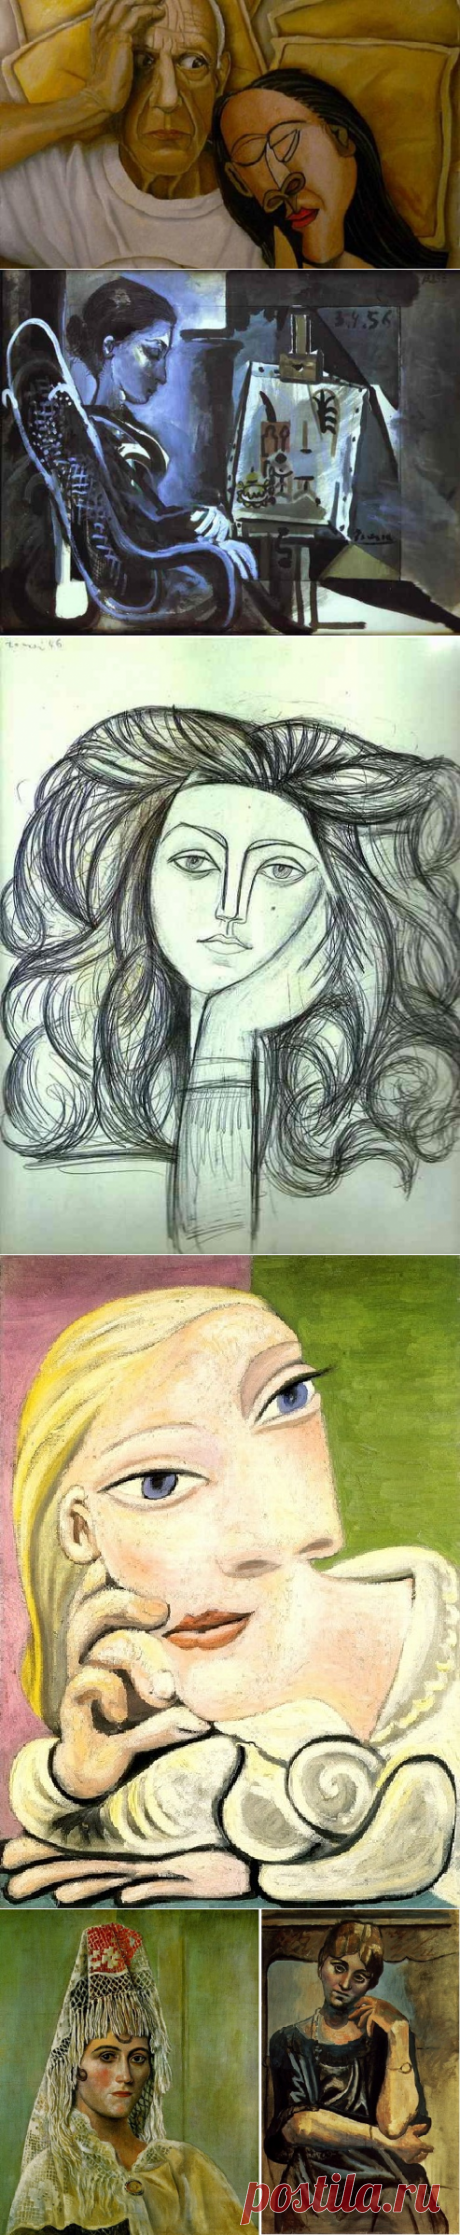 Семь главных женщин Пабло Пикассо в реальности и на портретах художника